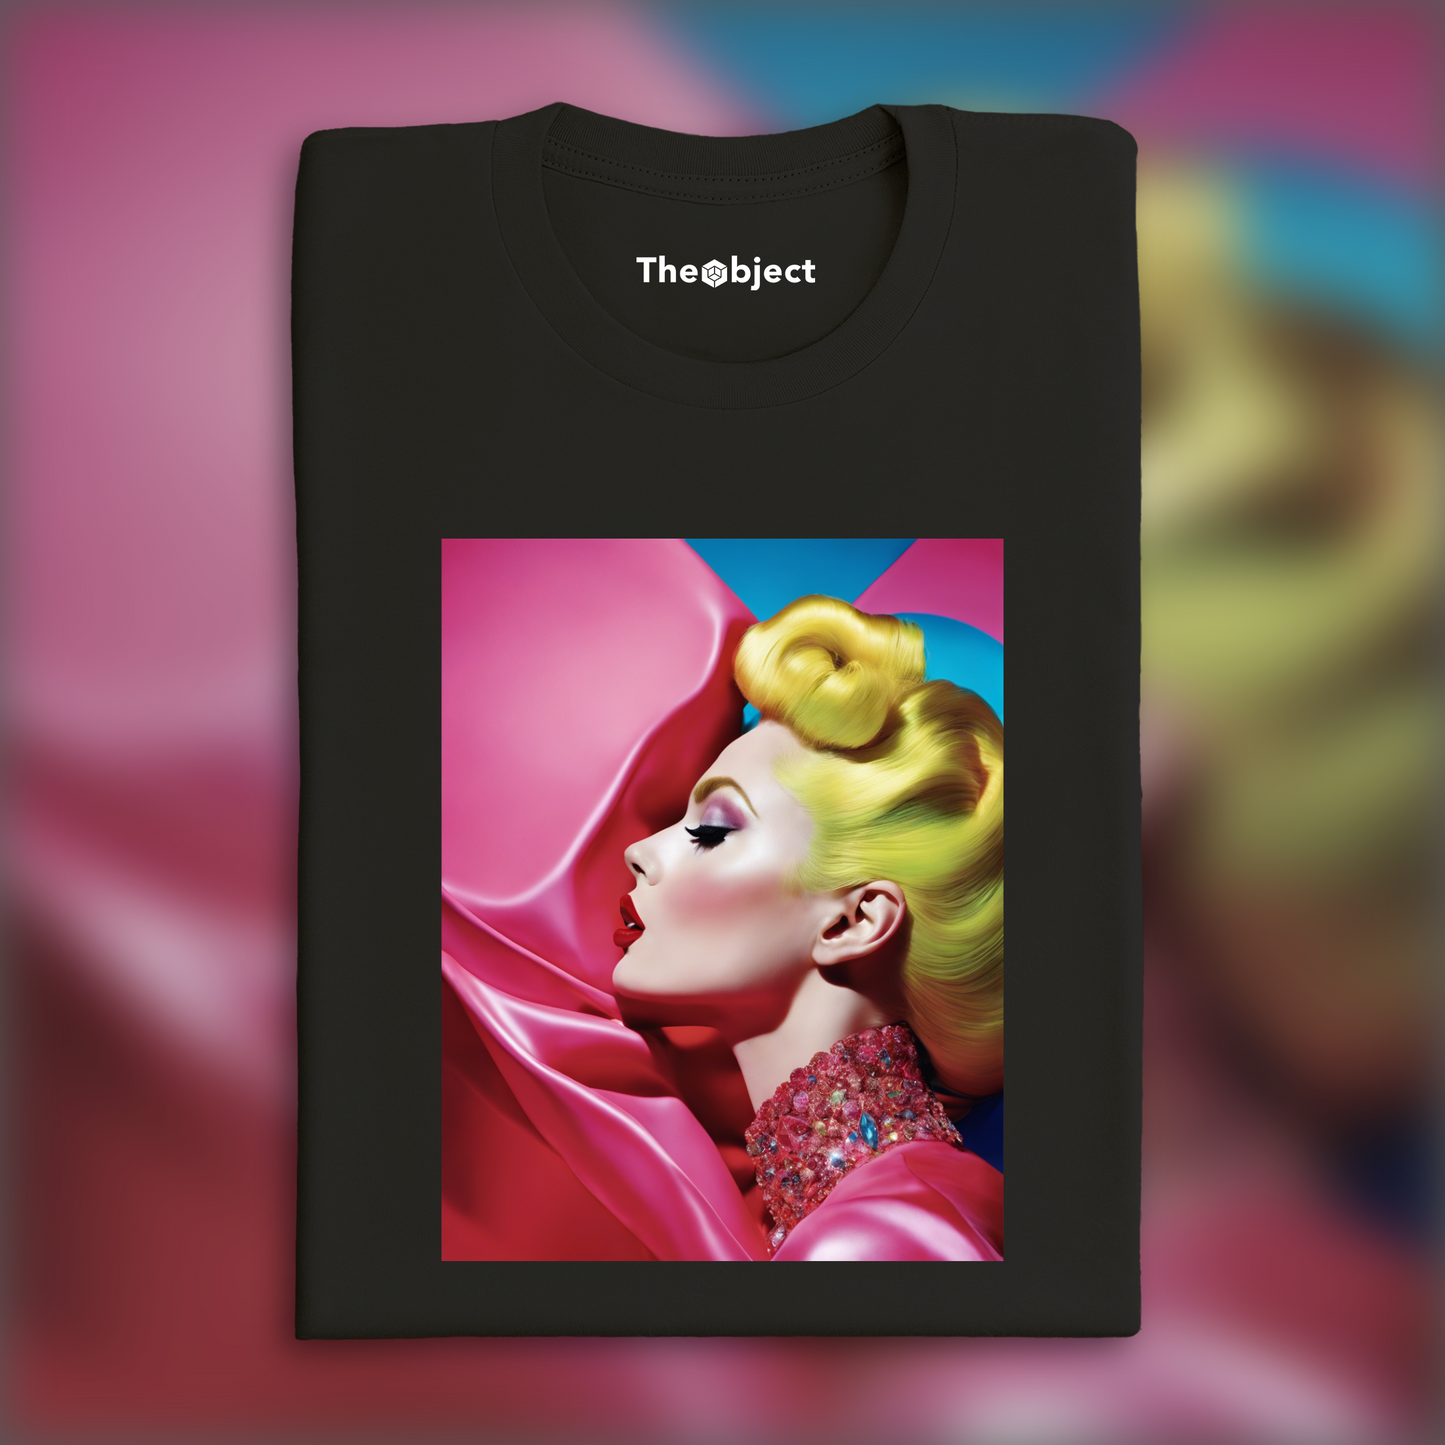 T-Shirt IA - Photographie britannique glamour et saturée, Un baiser - 897326740